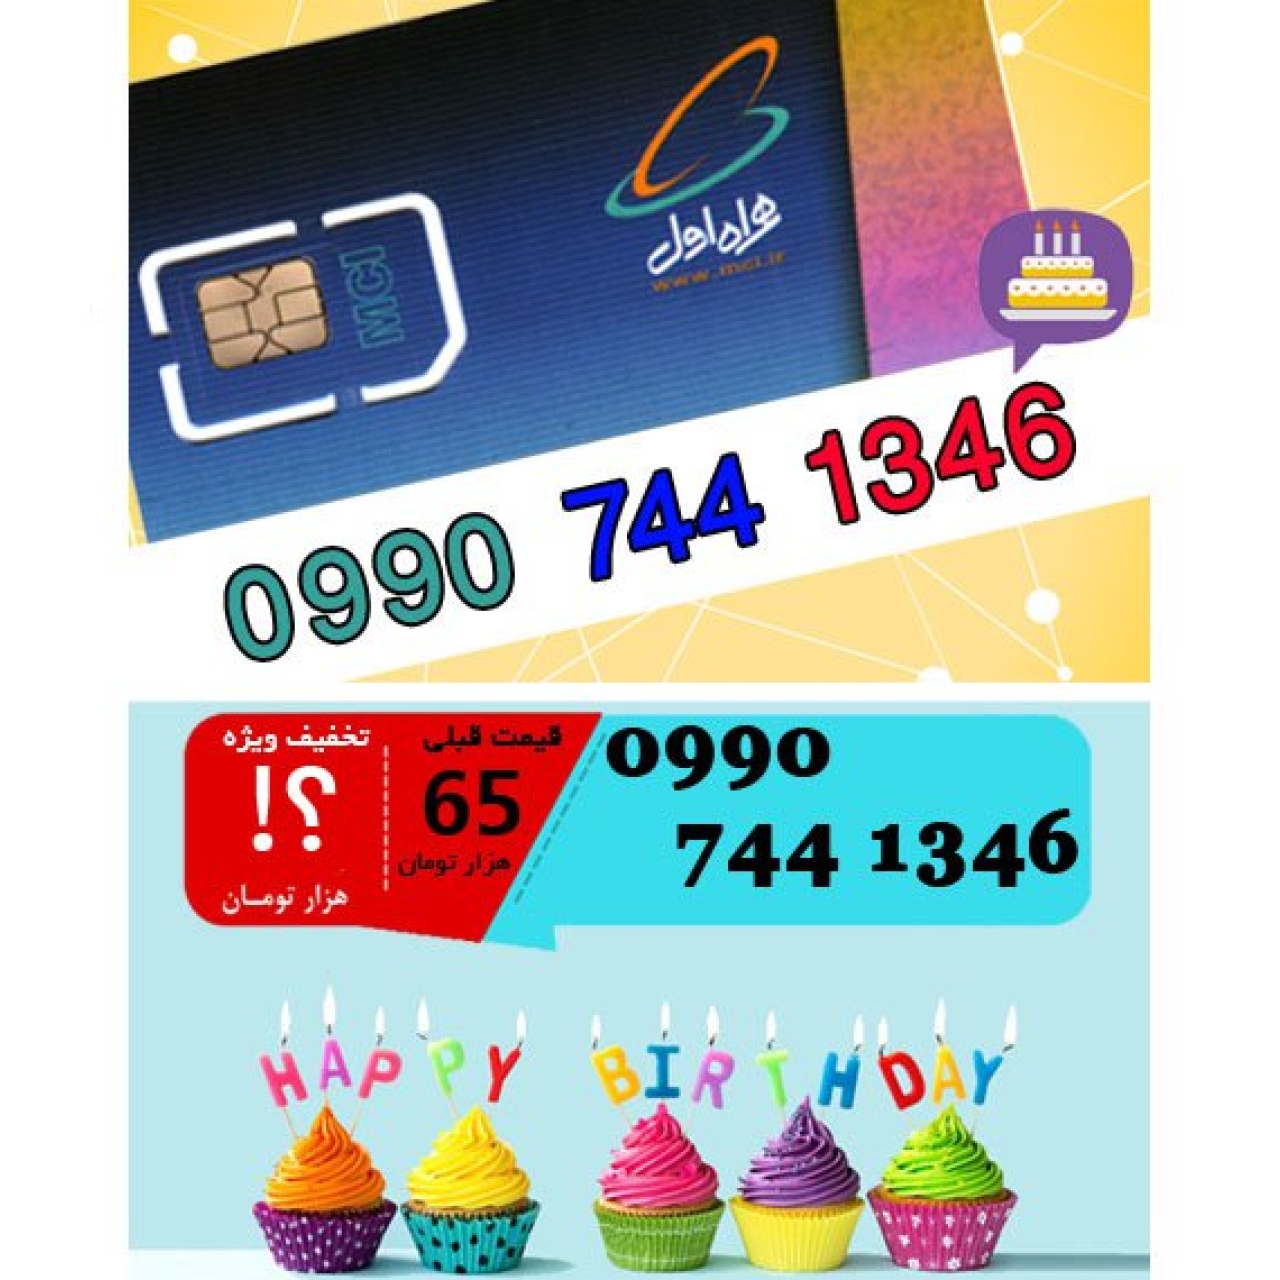 سیم کارت اعتباری همراه اول 09907441346 تاریخ تولد